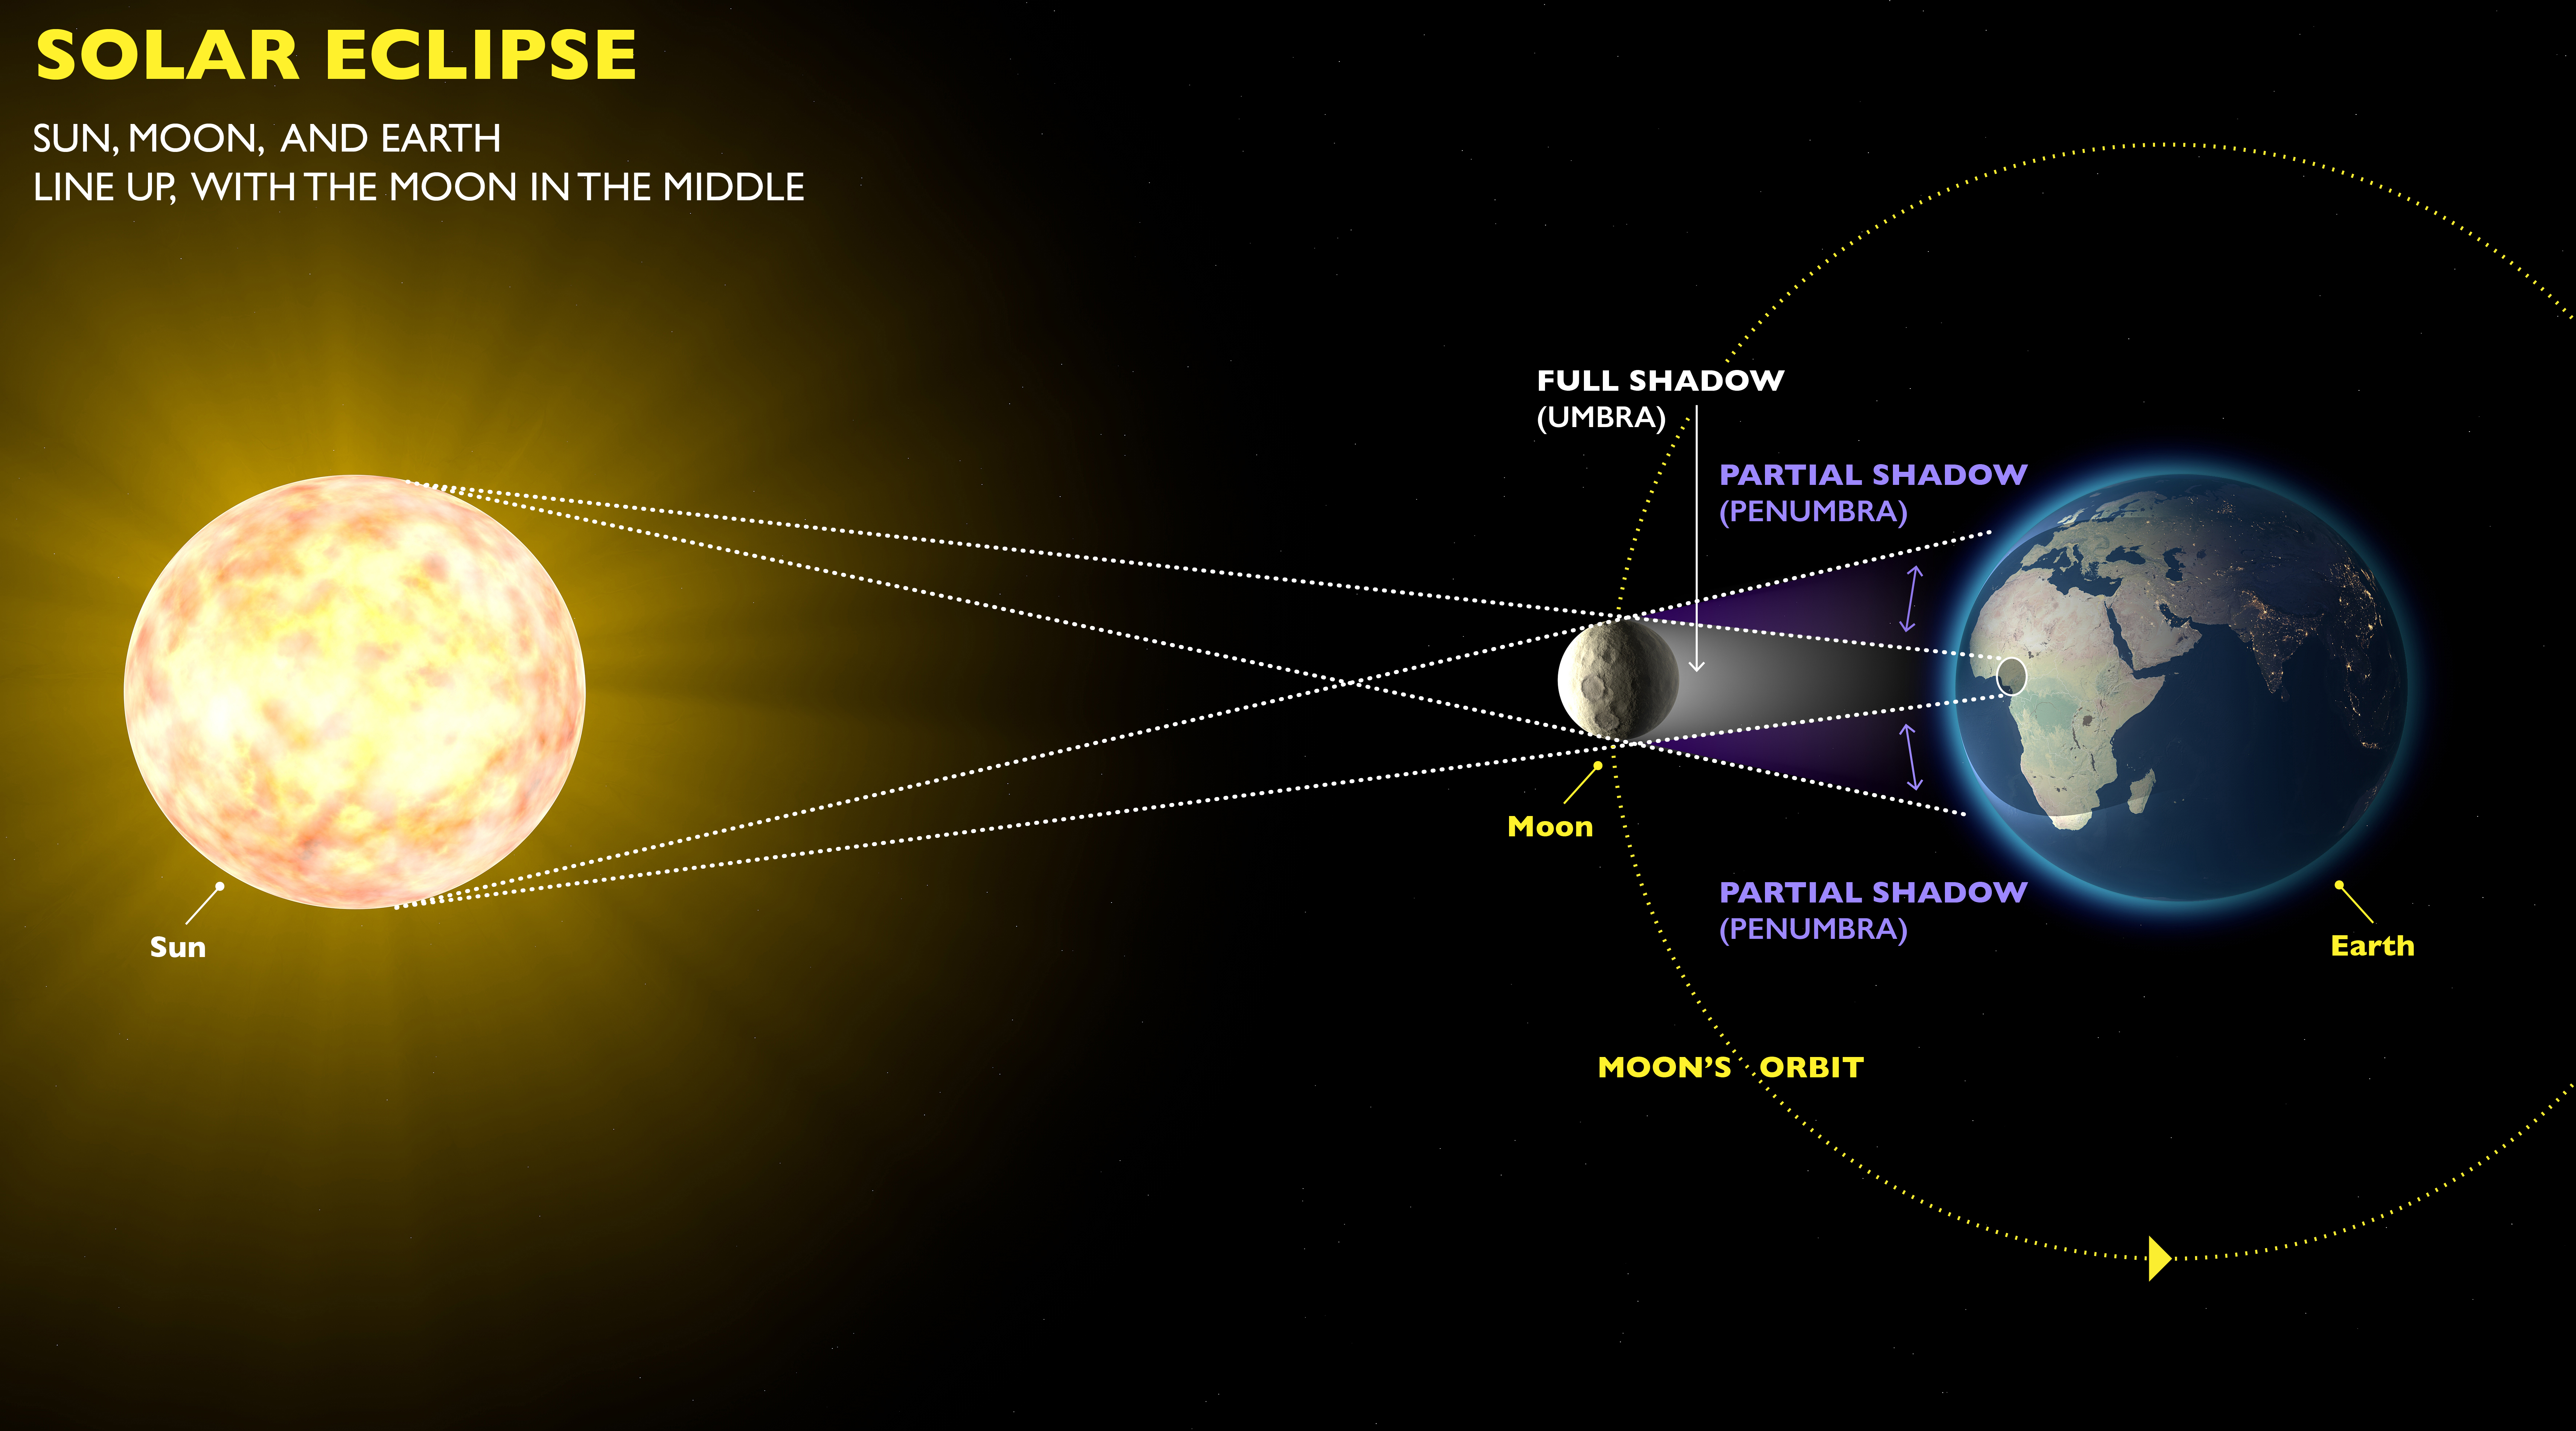 Eye Safety Tips for the Solar Eclipse - EyeSteve.com